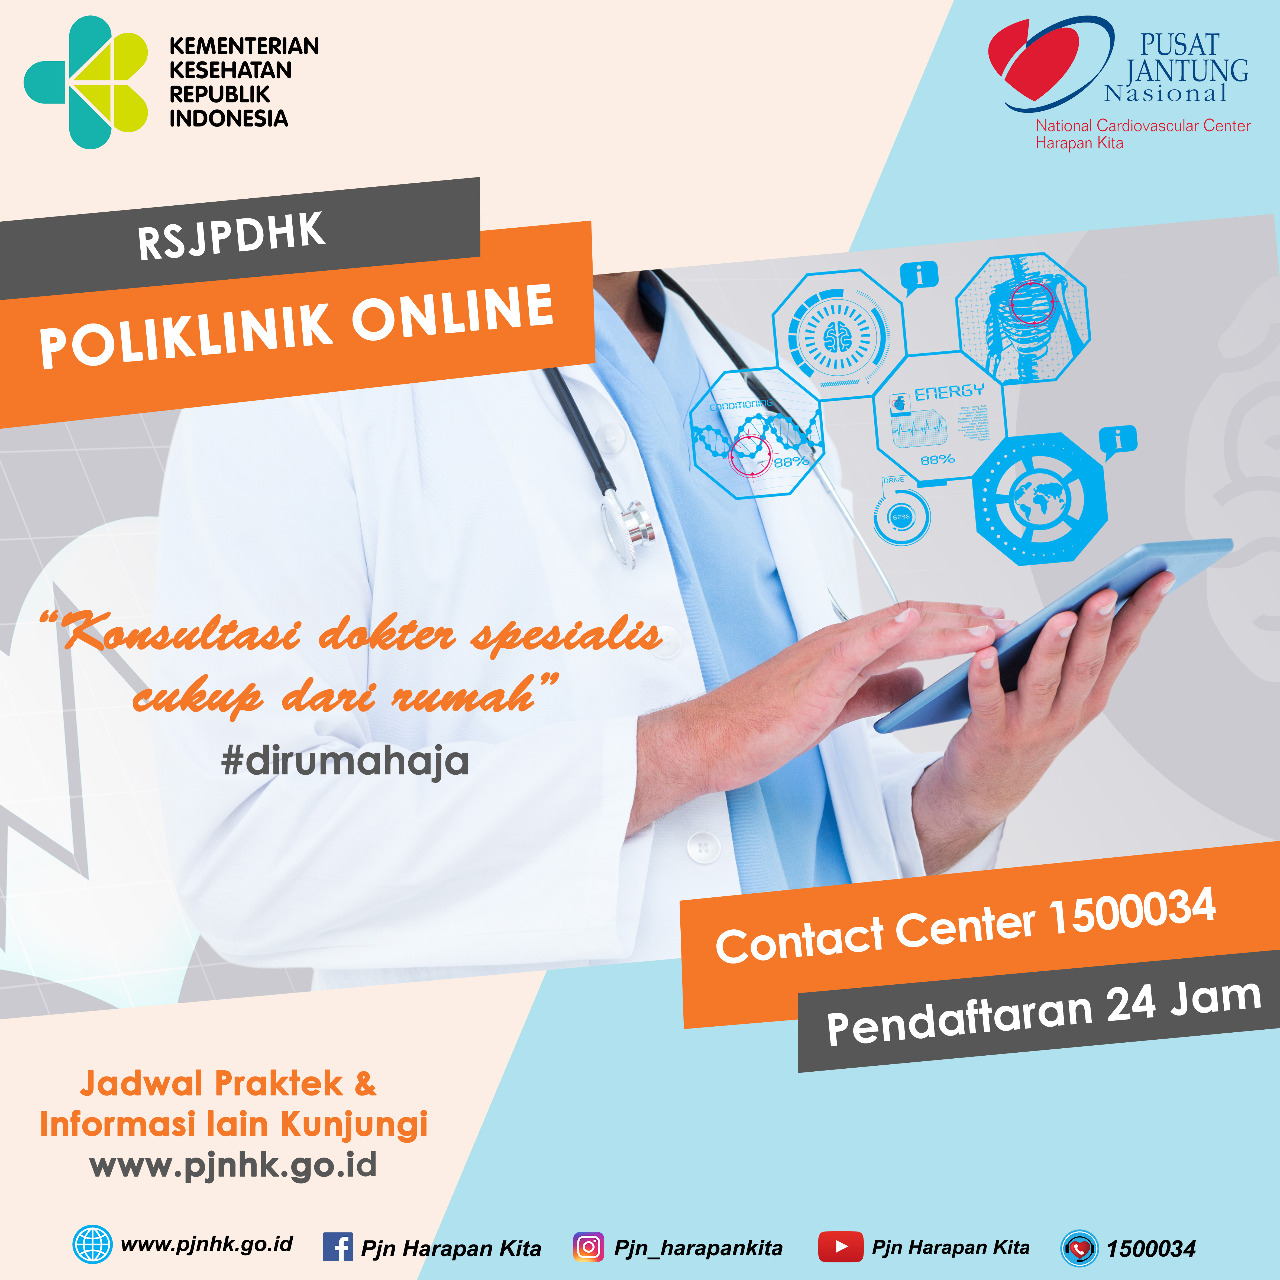 Tetap memberikan pelayanan konsultasi jantung saat pandemi, RSJPDHK melaksanakan Poli Online